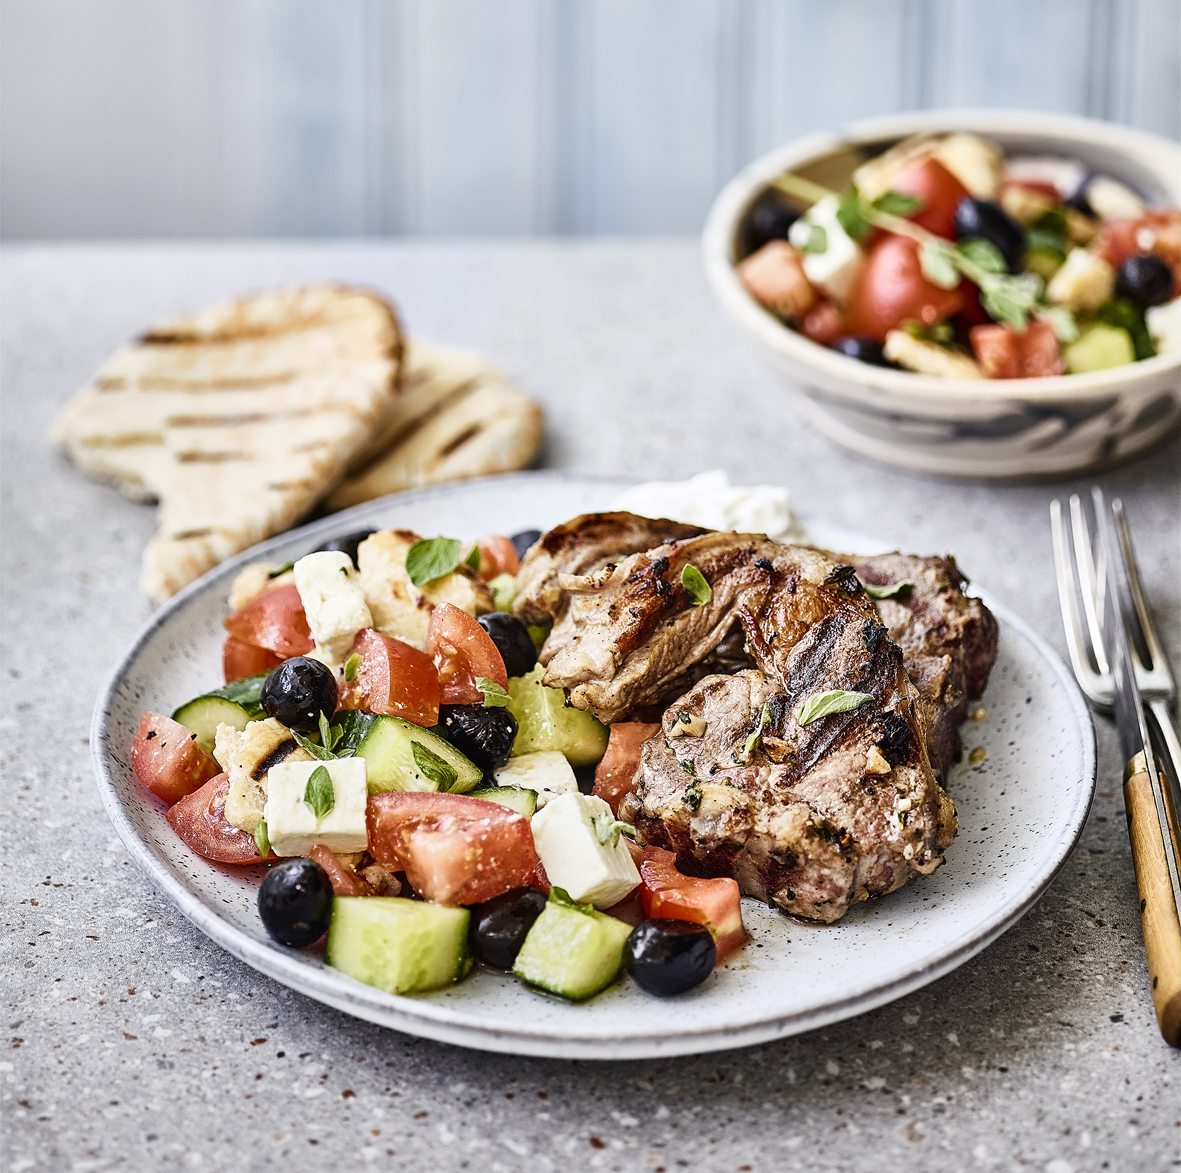 Greek Feta & Olive Salad with Lamb Chops